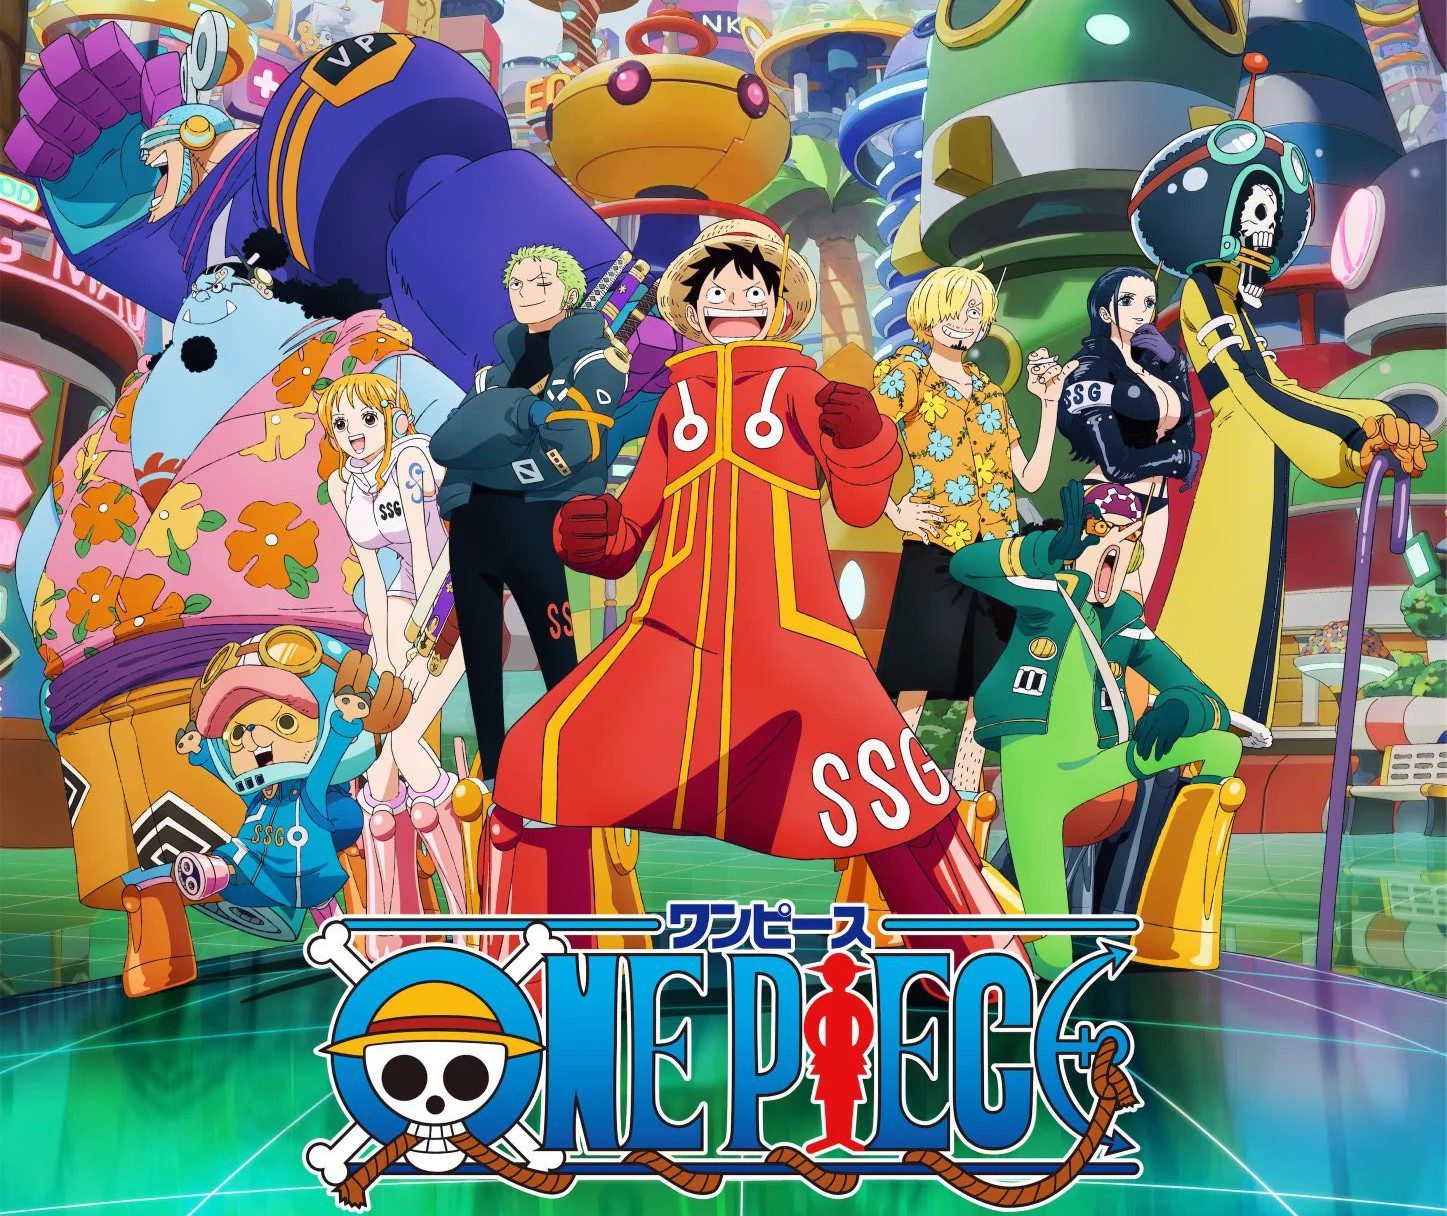 Recensione dell'episodio 1089 dell'anime di One Piece